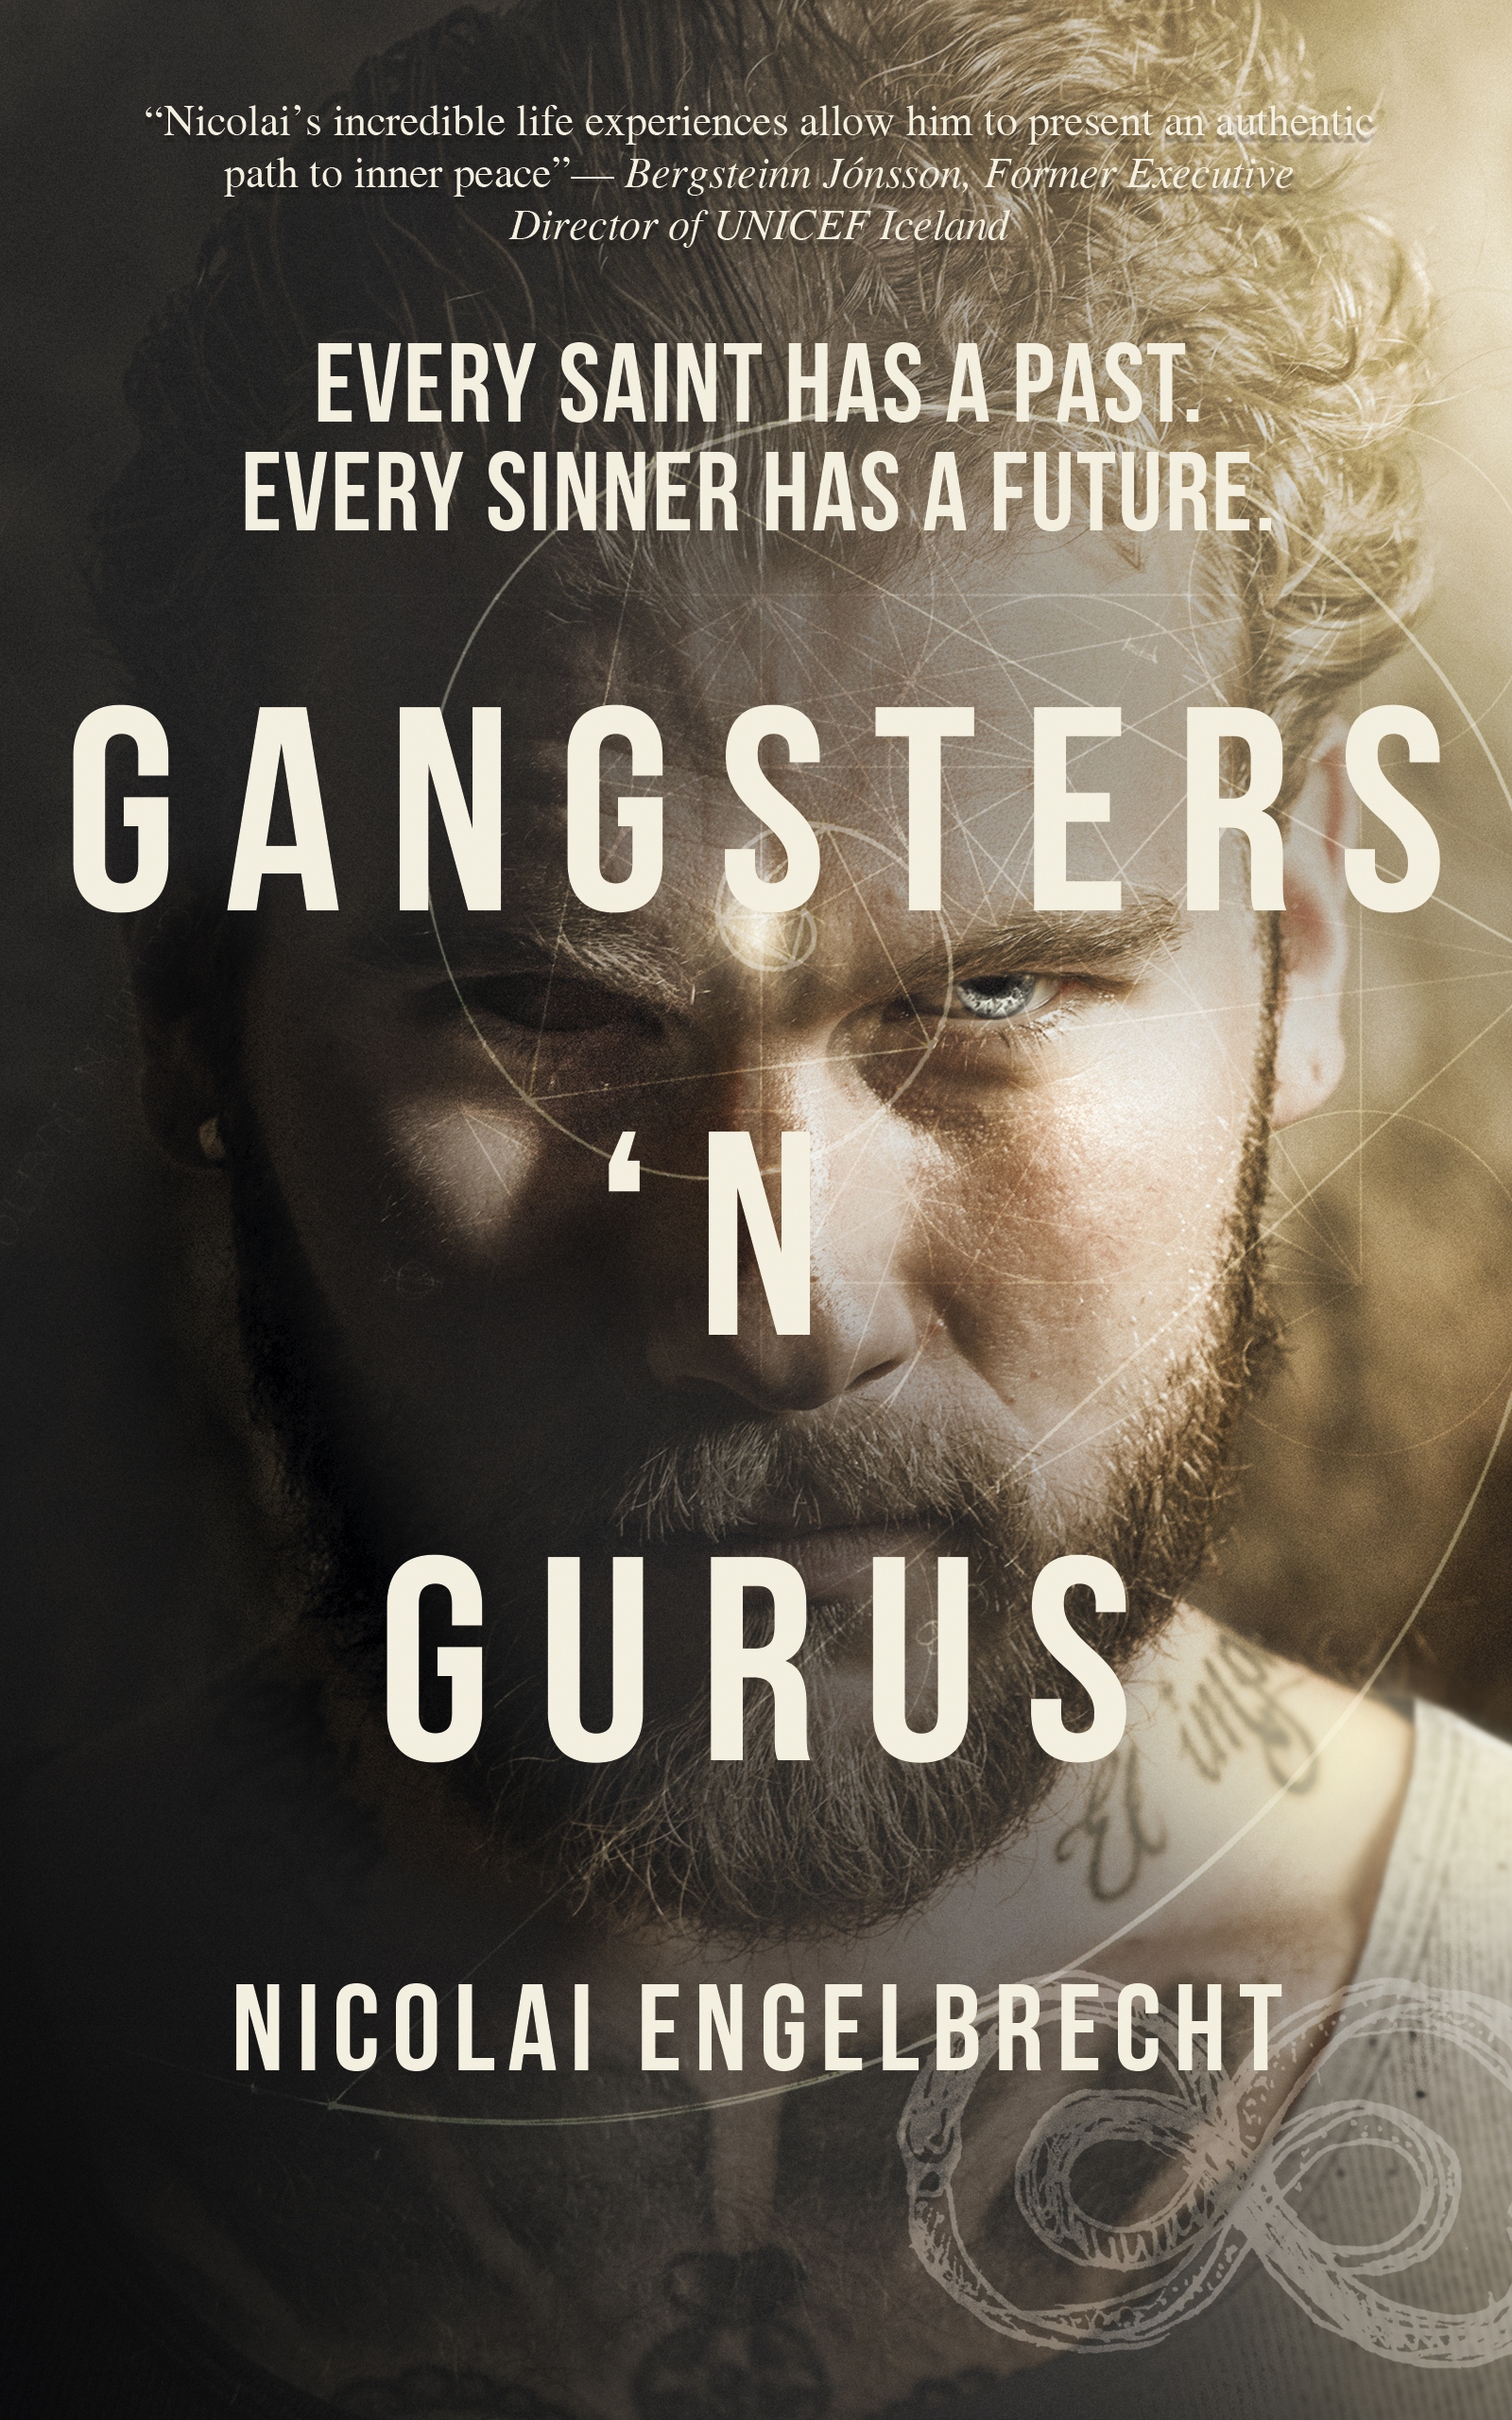 Gangsters "N Gurus